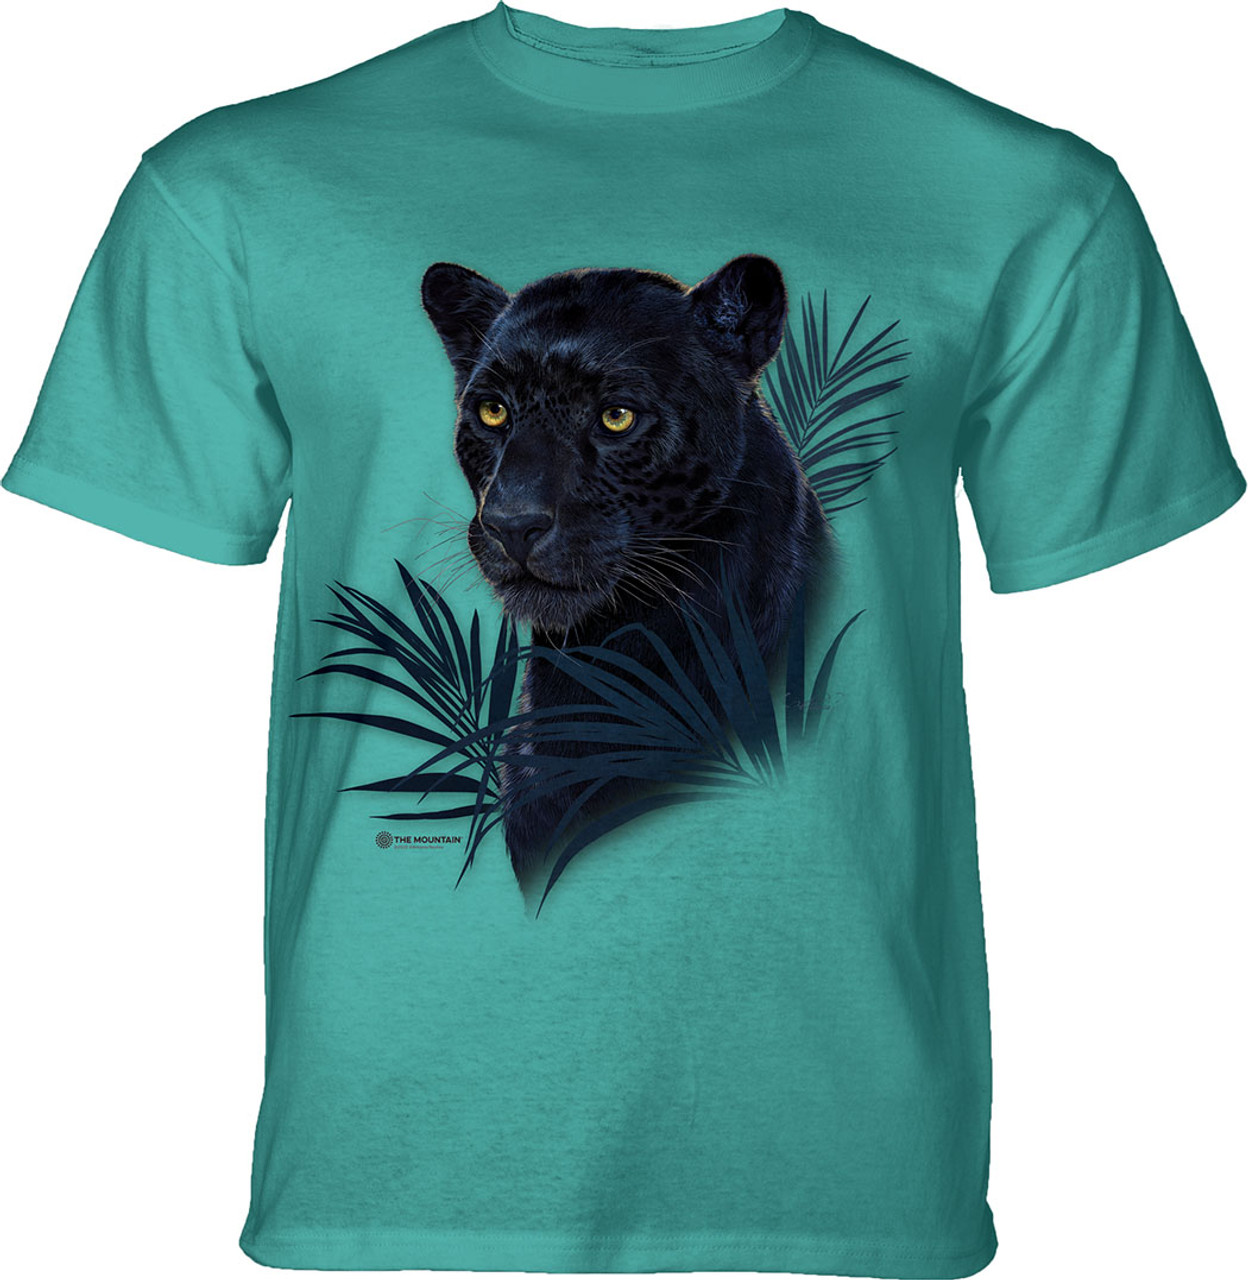 The Mountain Black Jaguar Kids' T-Shirt